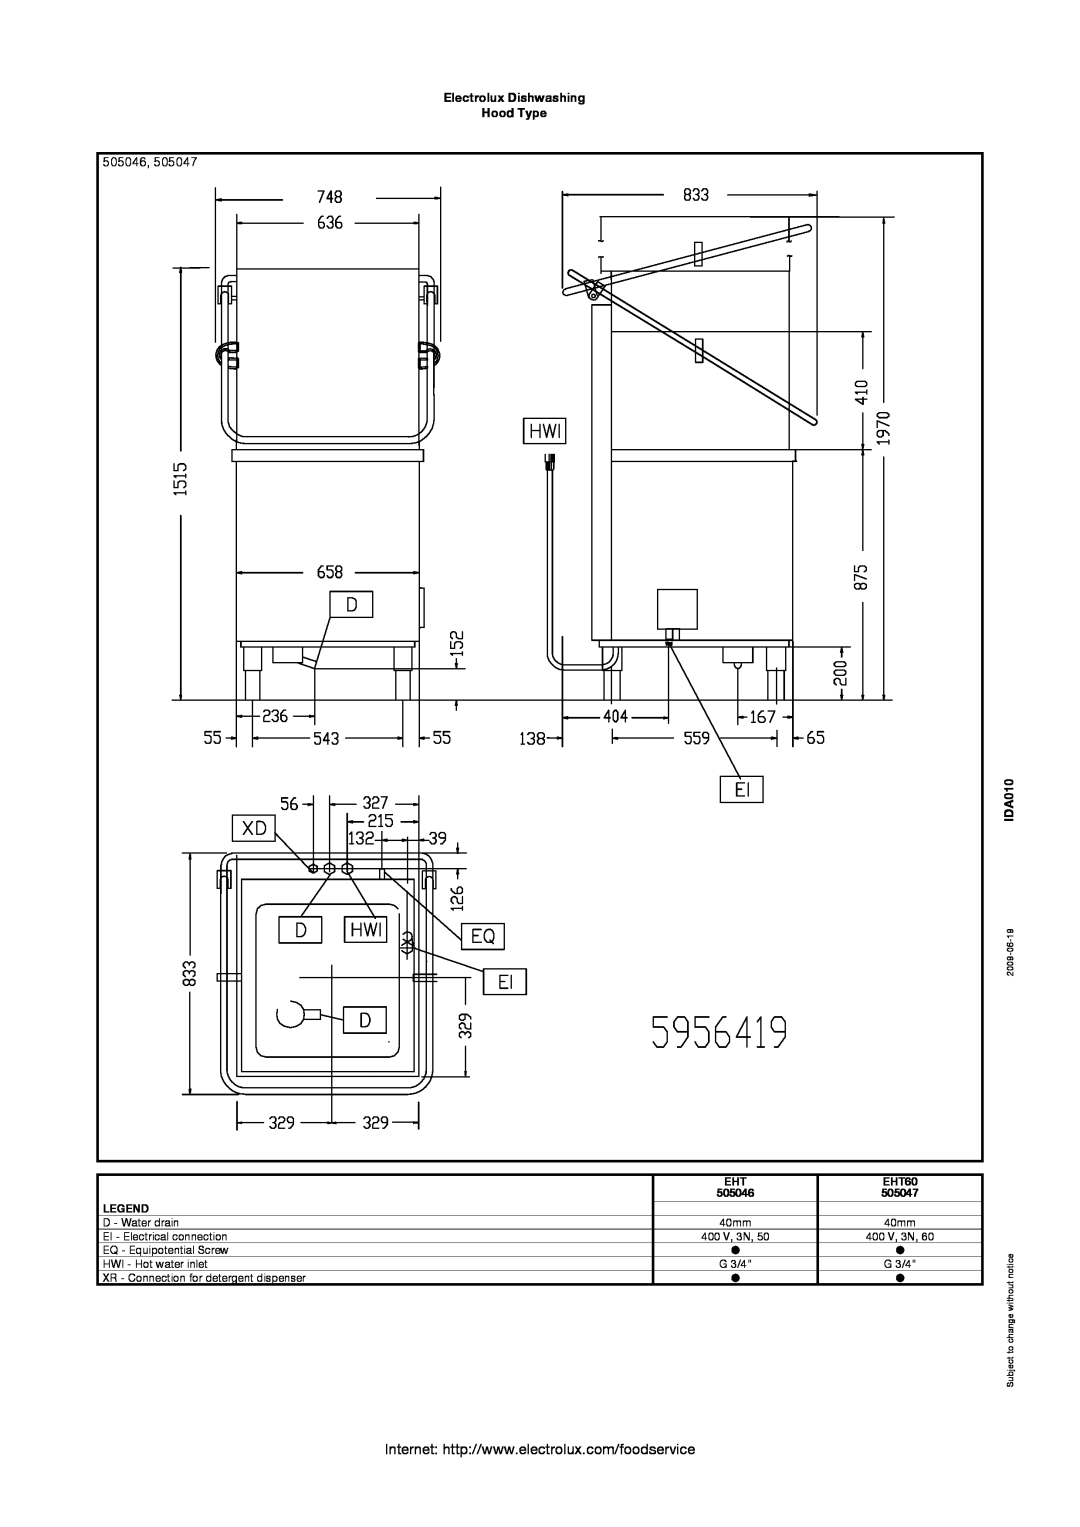 Electrolux 505046 manual Electrolux Dishwashing Hood Type, IDA010, EHT60, 505047 